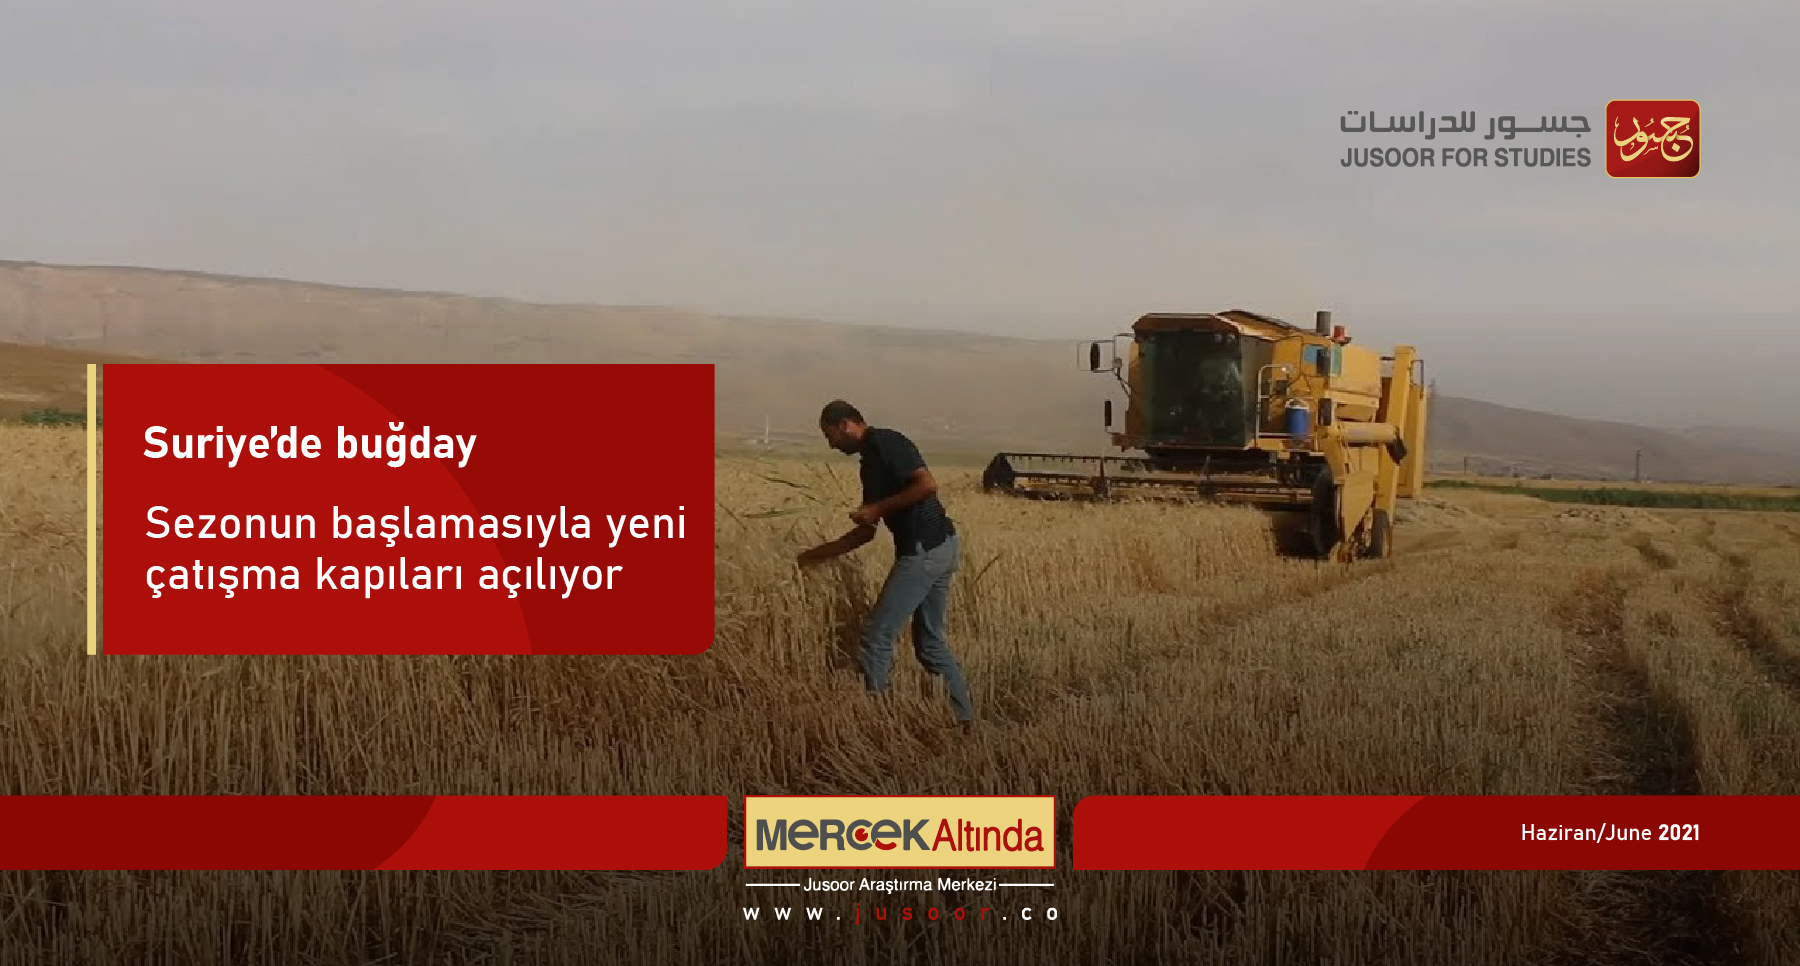 Suriye’de buğday: Sezonun başlamasıyla yeni çatışma kapıları açılıyor